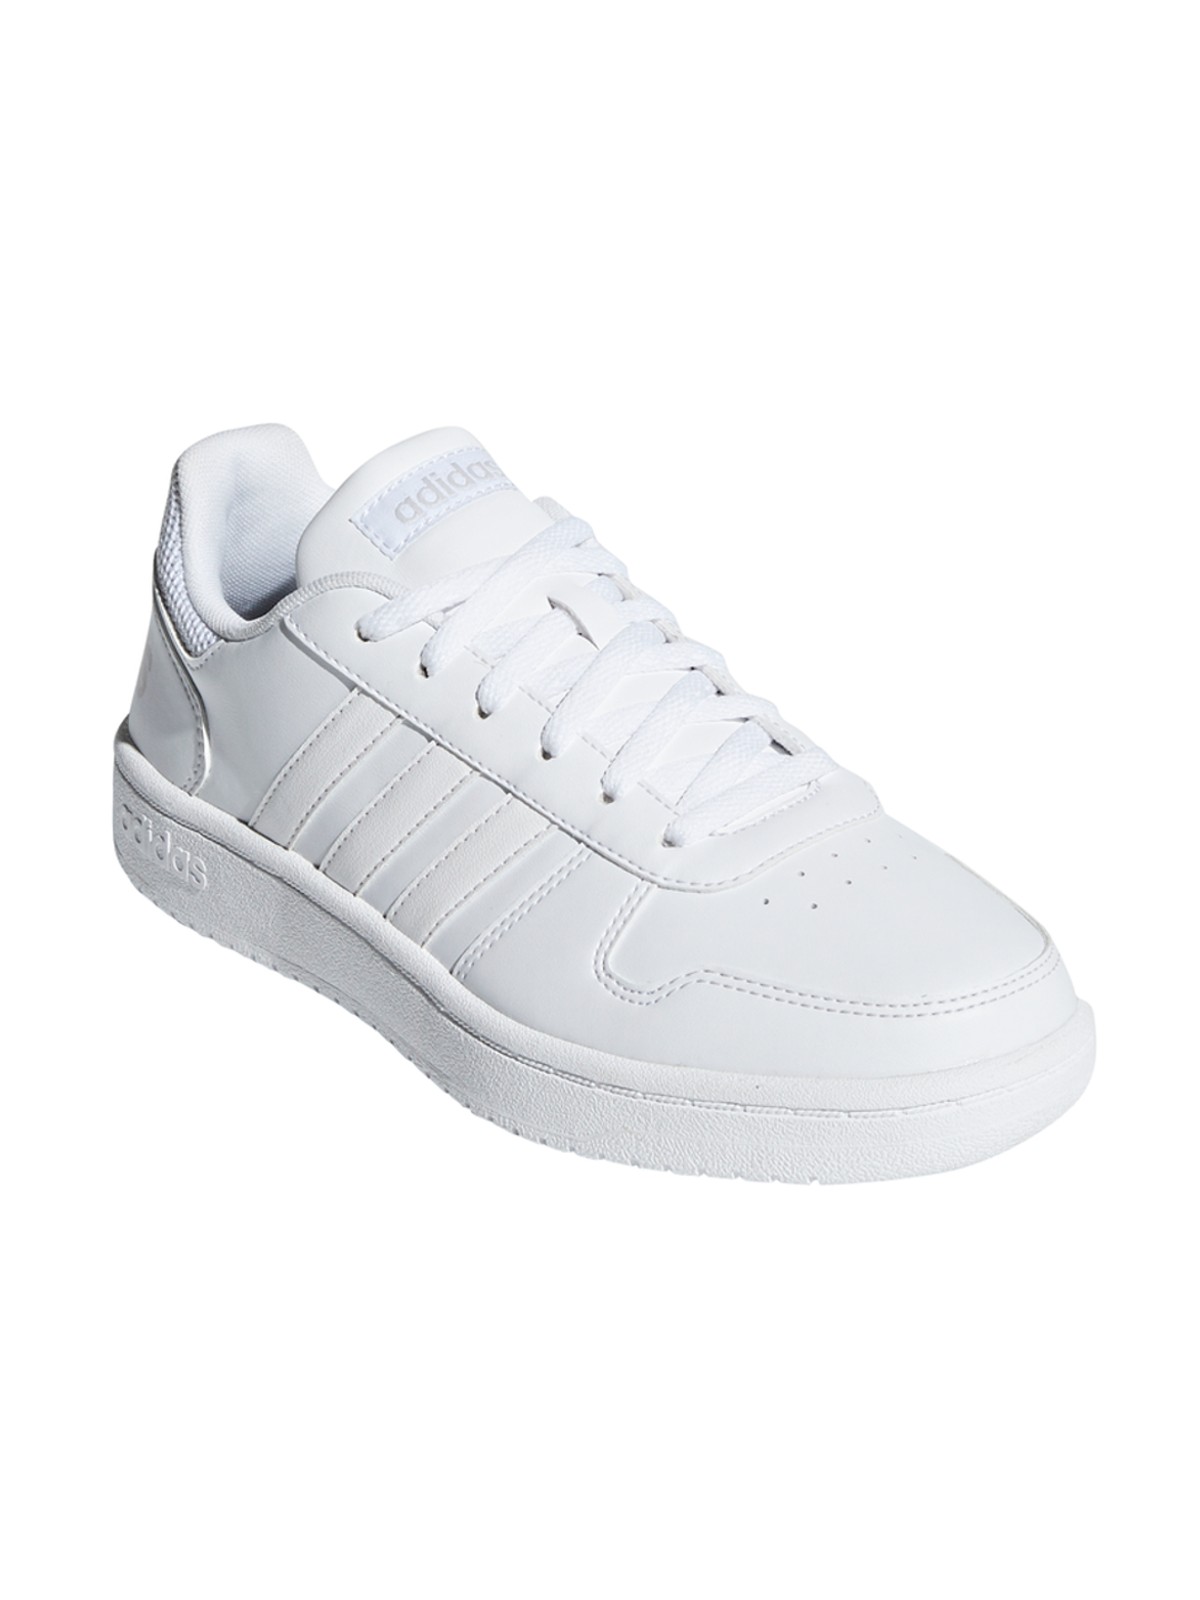 Tennis blanches femme adidas (36-41) DistriCenter